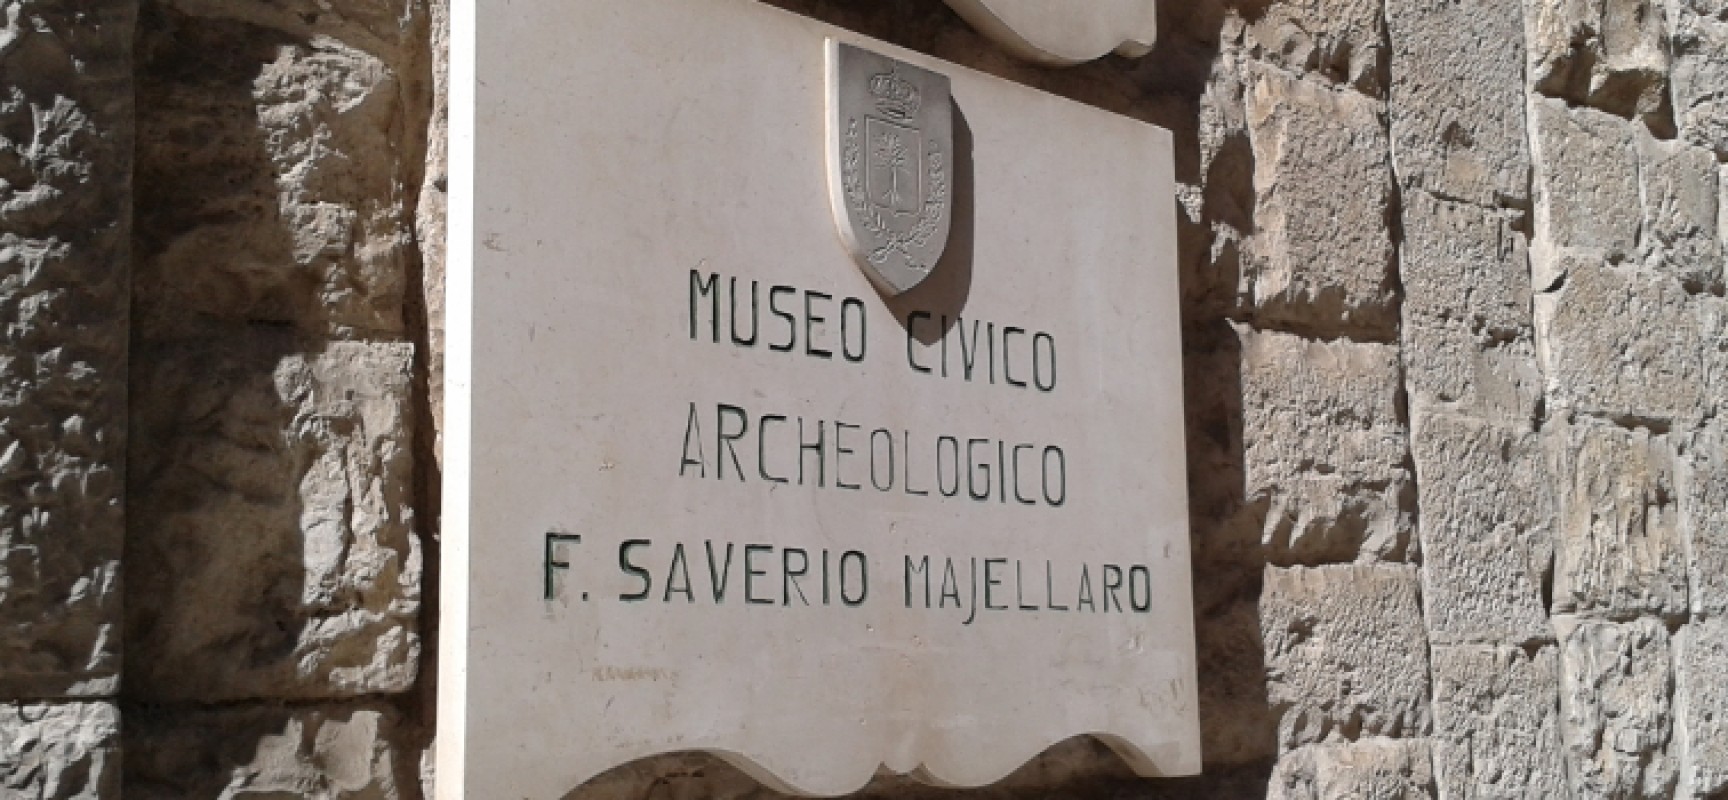 Finanziamenti regionali per i musei, tra i 41 selezionati alche il Museo Archeologico “Majellaro”